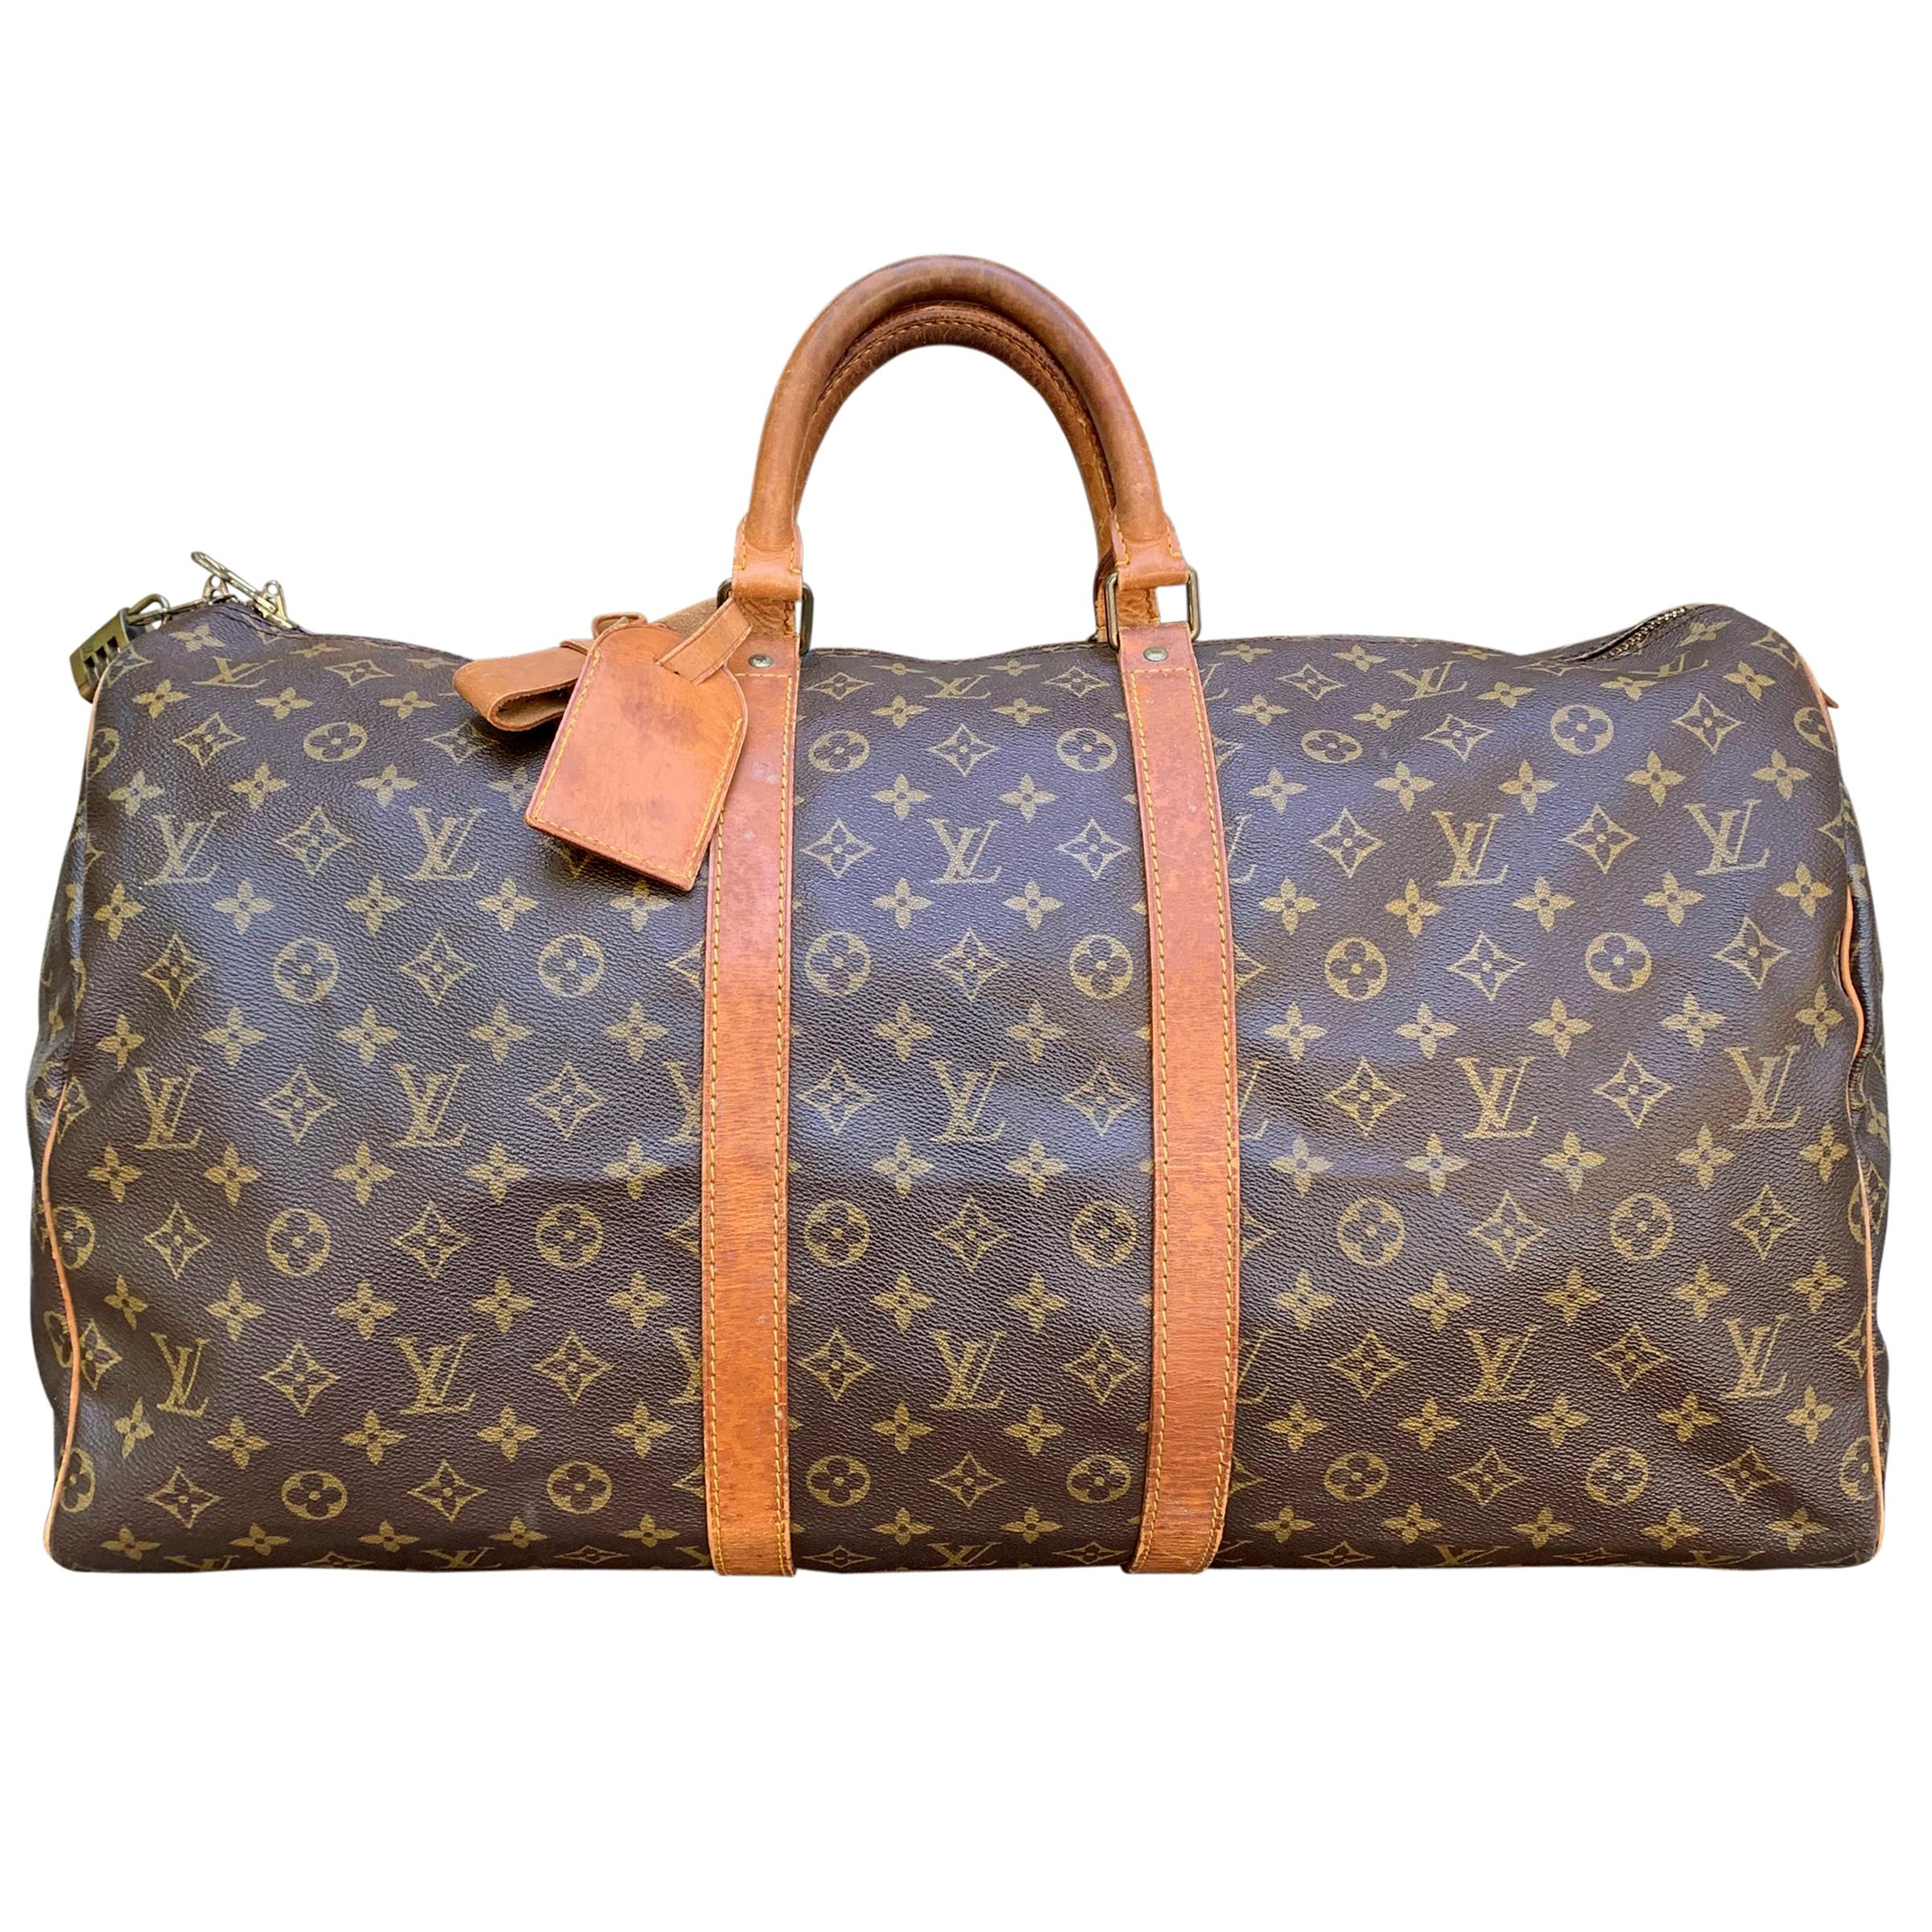 Sold at Auction: Classic Vintage Louis Vuitton Garment Bag